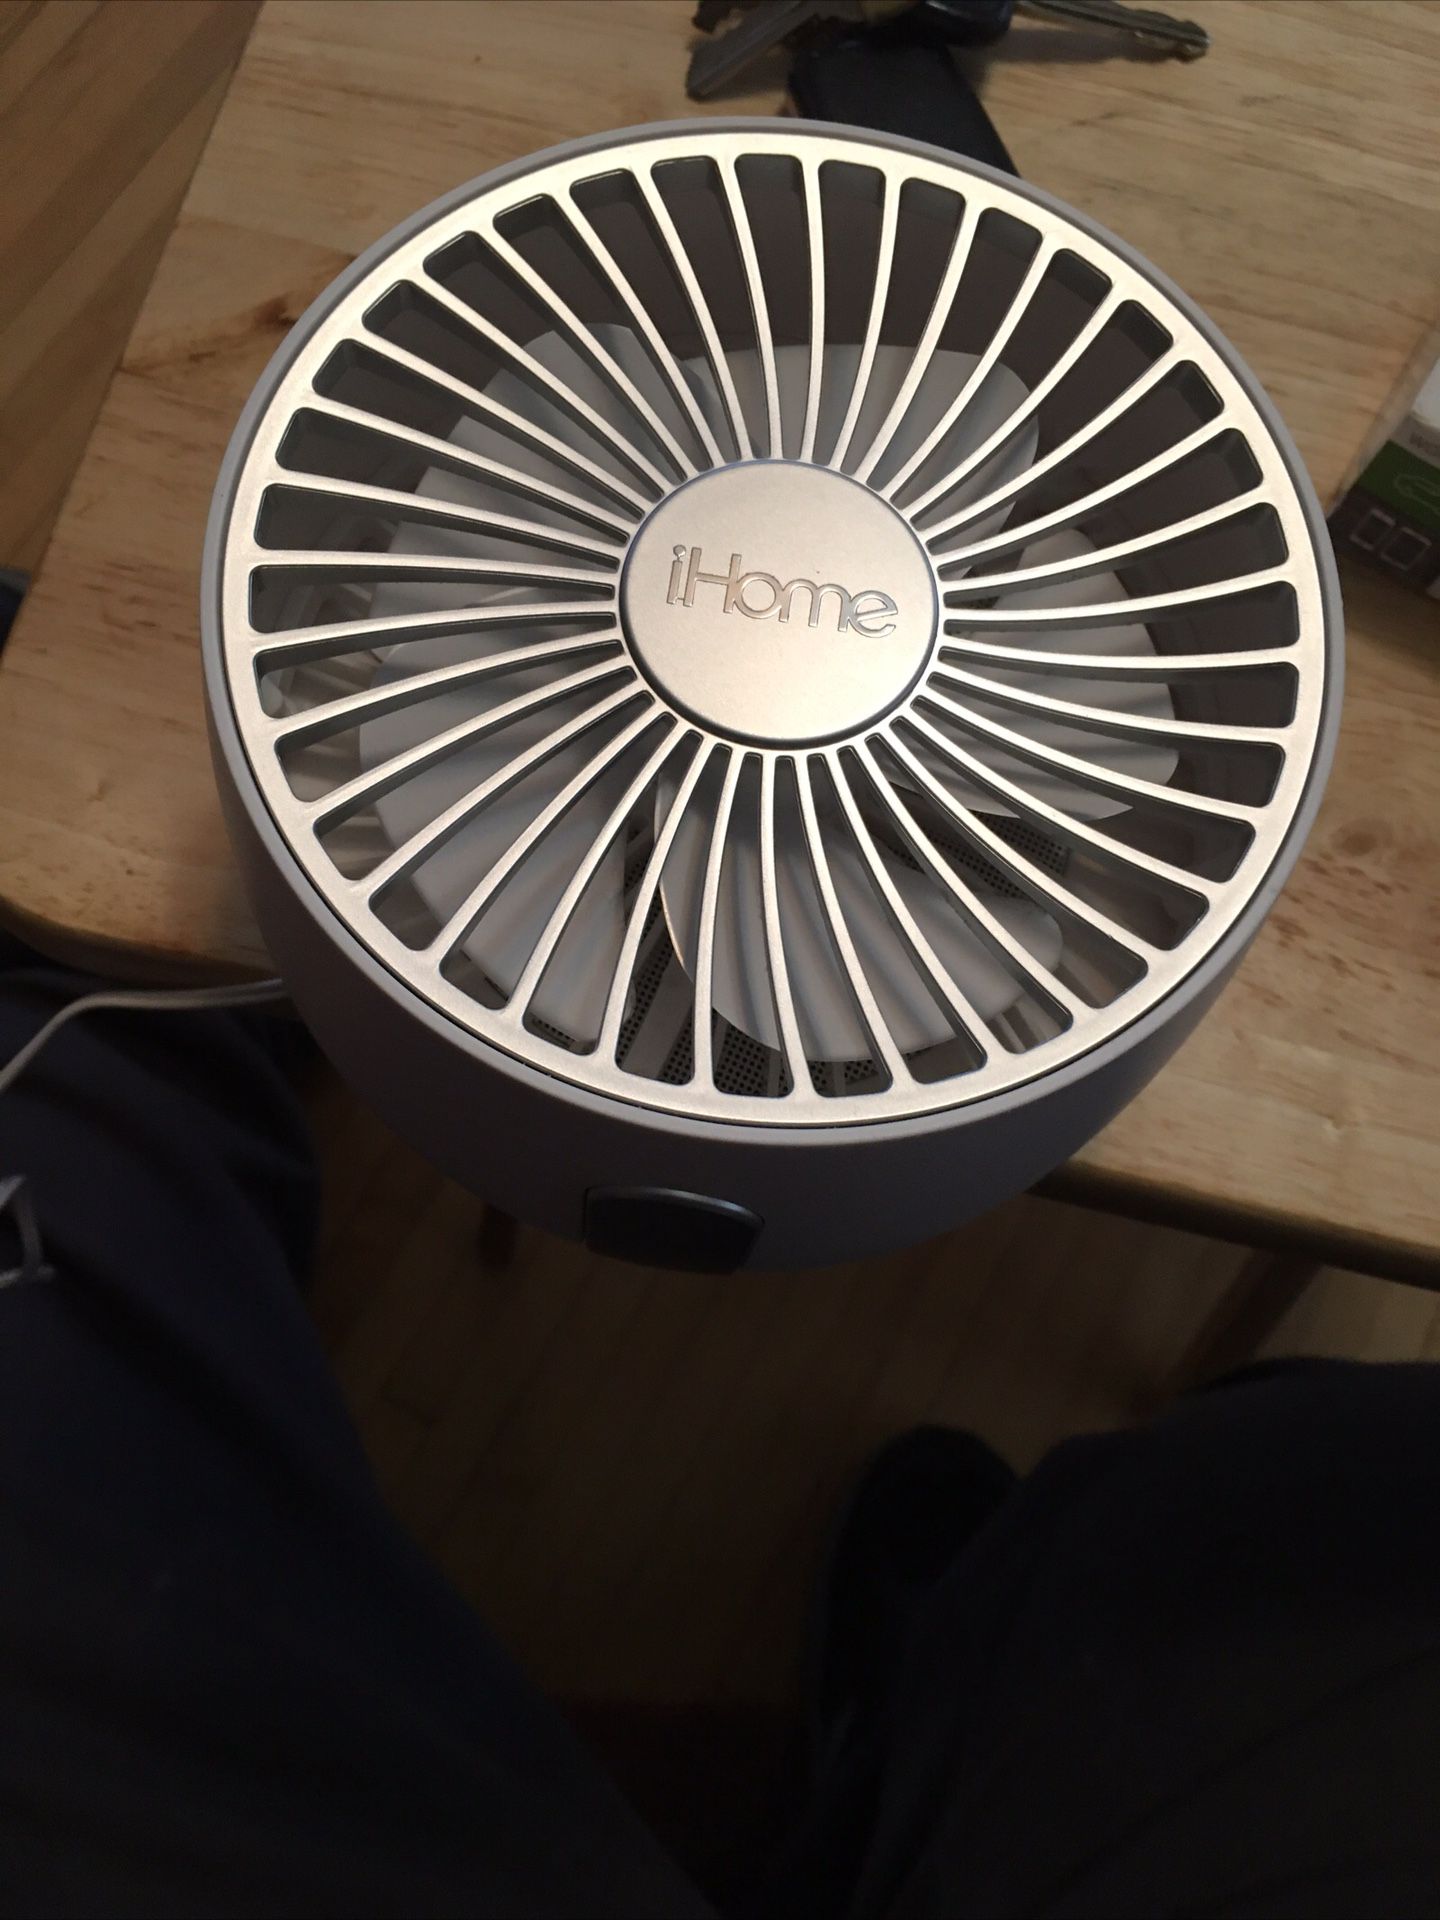 smaller 10 inch fan